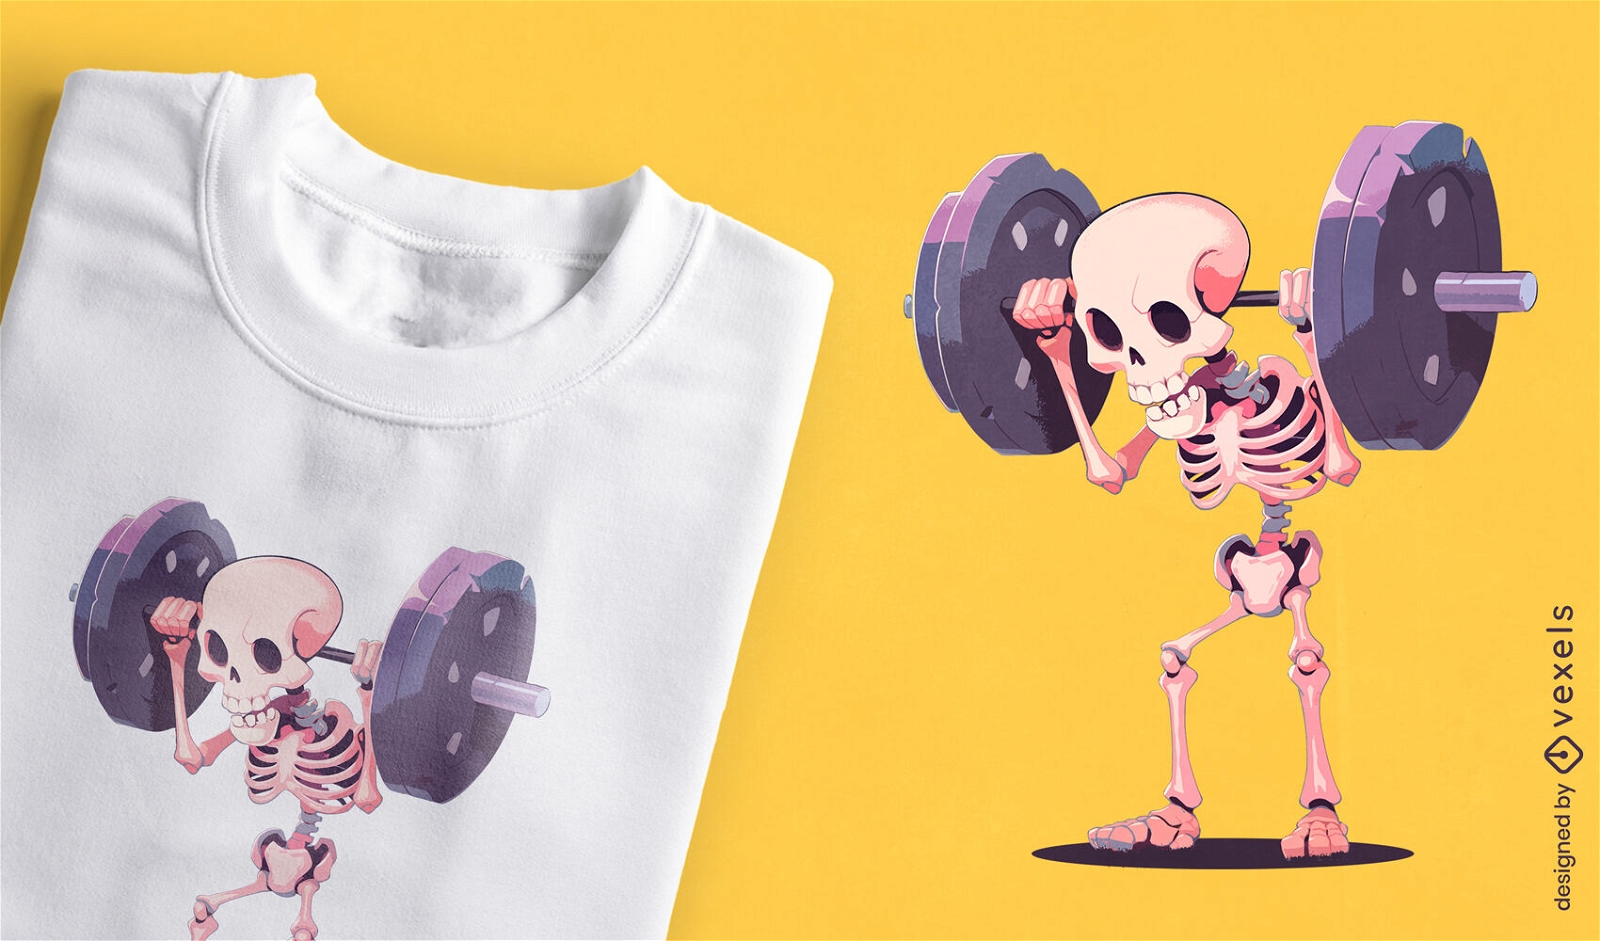 Dise?o de camiseta de esqueleto de levantamiento de pesas humor?stico.